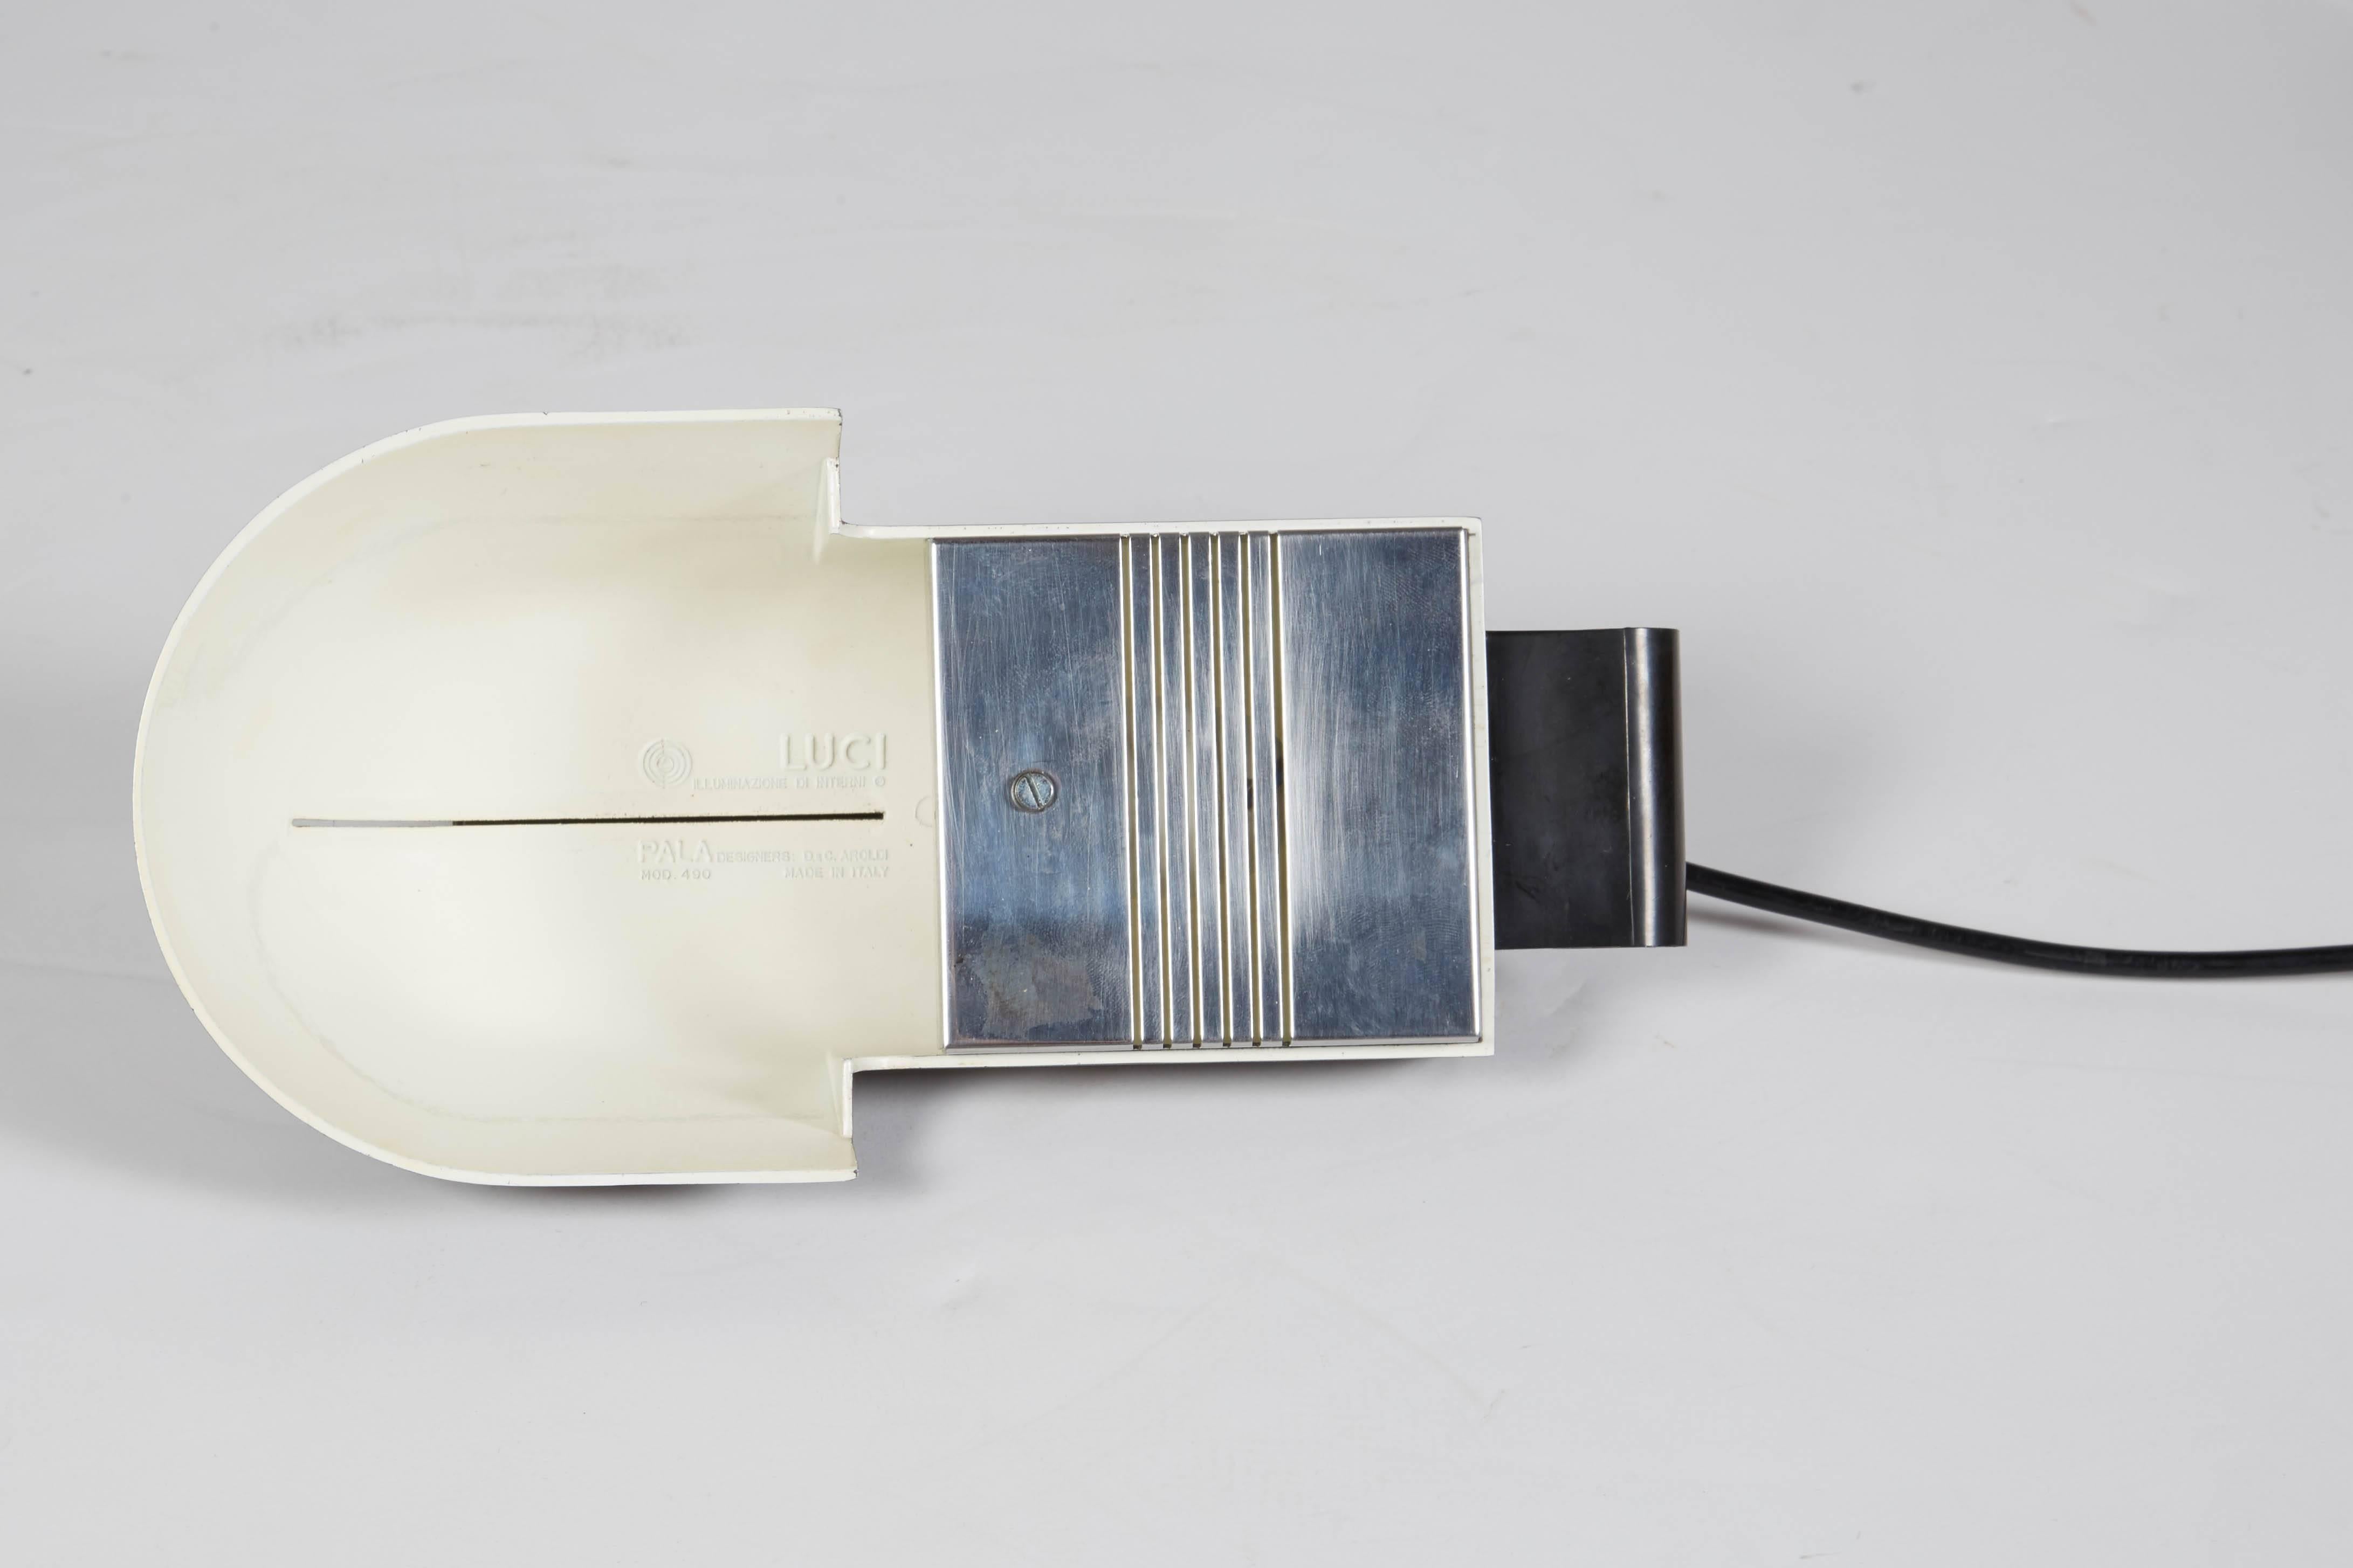 Diese verstellbare Schreibtischlampe wurde von D. C. Arnoldi für das italienische Beleuchtungsunternehmen Luci illuminaznione d'interni um 1970 entworfen. Das Unternehmen wurde 1966 gegründet und wurde schnell für seine originellen und innovativen